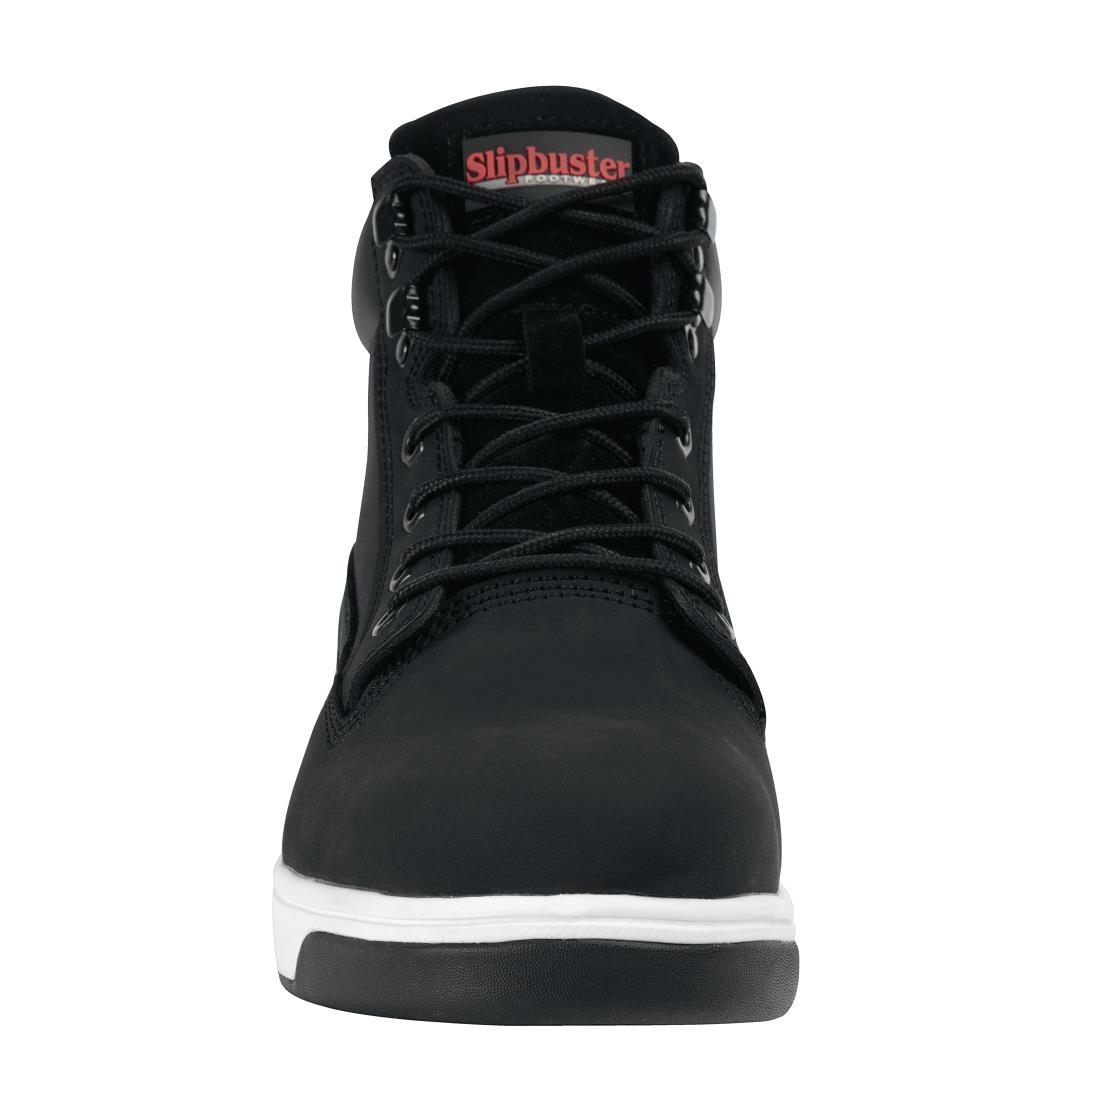 Slipbuster Sneaker Boots Black 40 - BB422-40  - 3